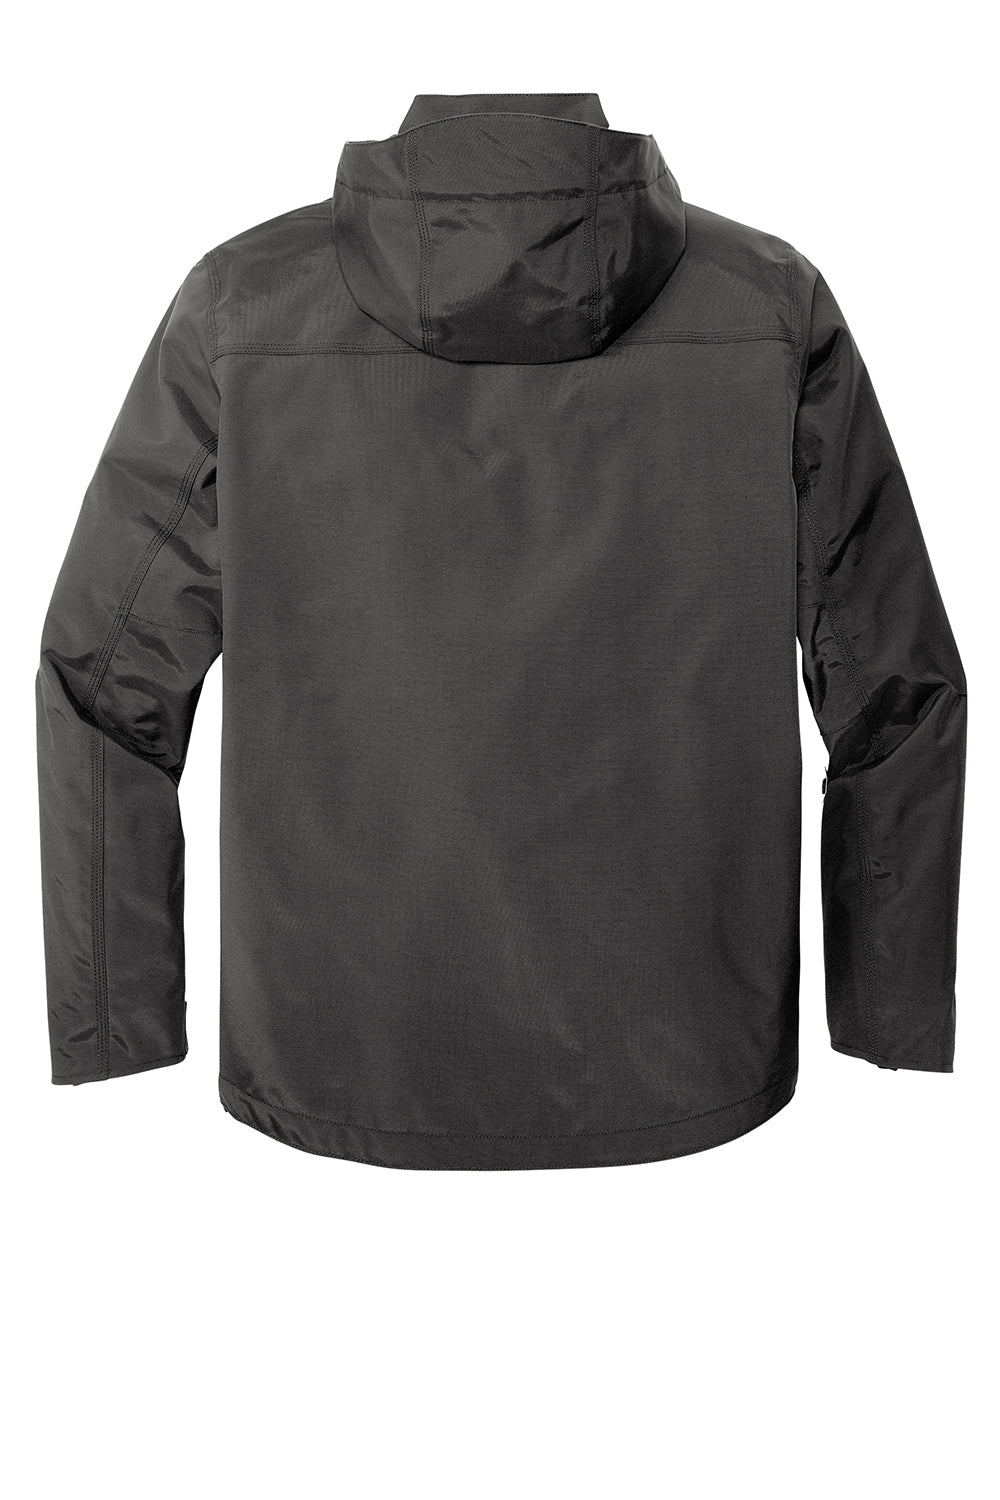 Carhartt CT104670 Mens Storm Defender Shoreline Waterproof Full Zip Hooded Jacket Shadow Grey Flat Back